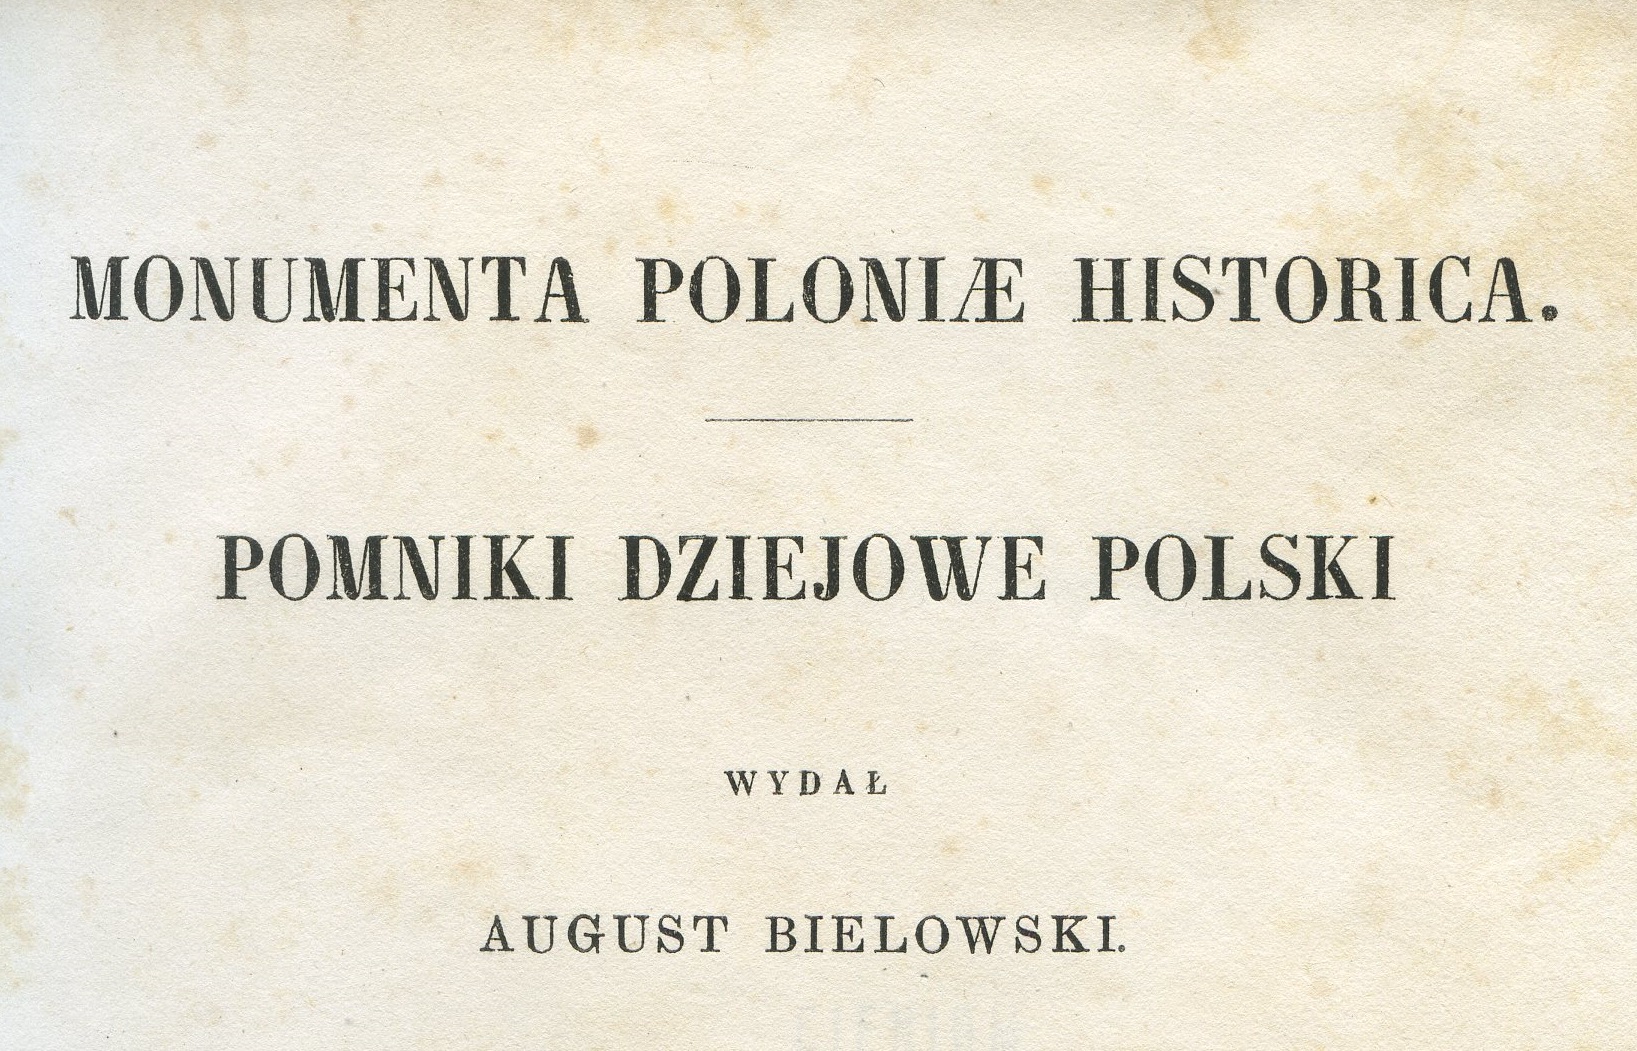 August Bielowski. MONUMENTA POLONIÆ HISTORICA. Pomniki dziejowe Polski.- Lwów: Nakładem własnym.- 1864.